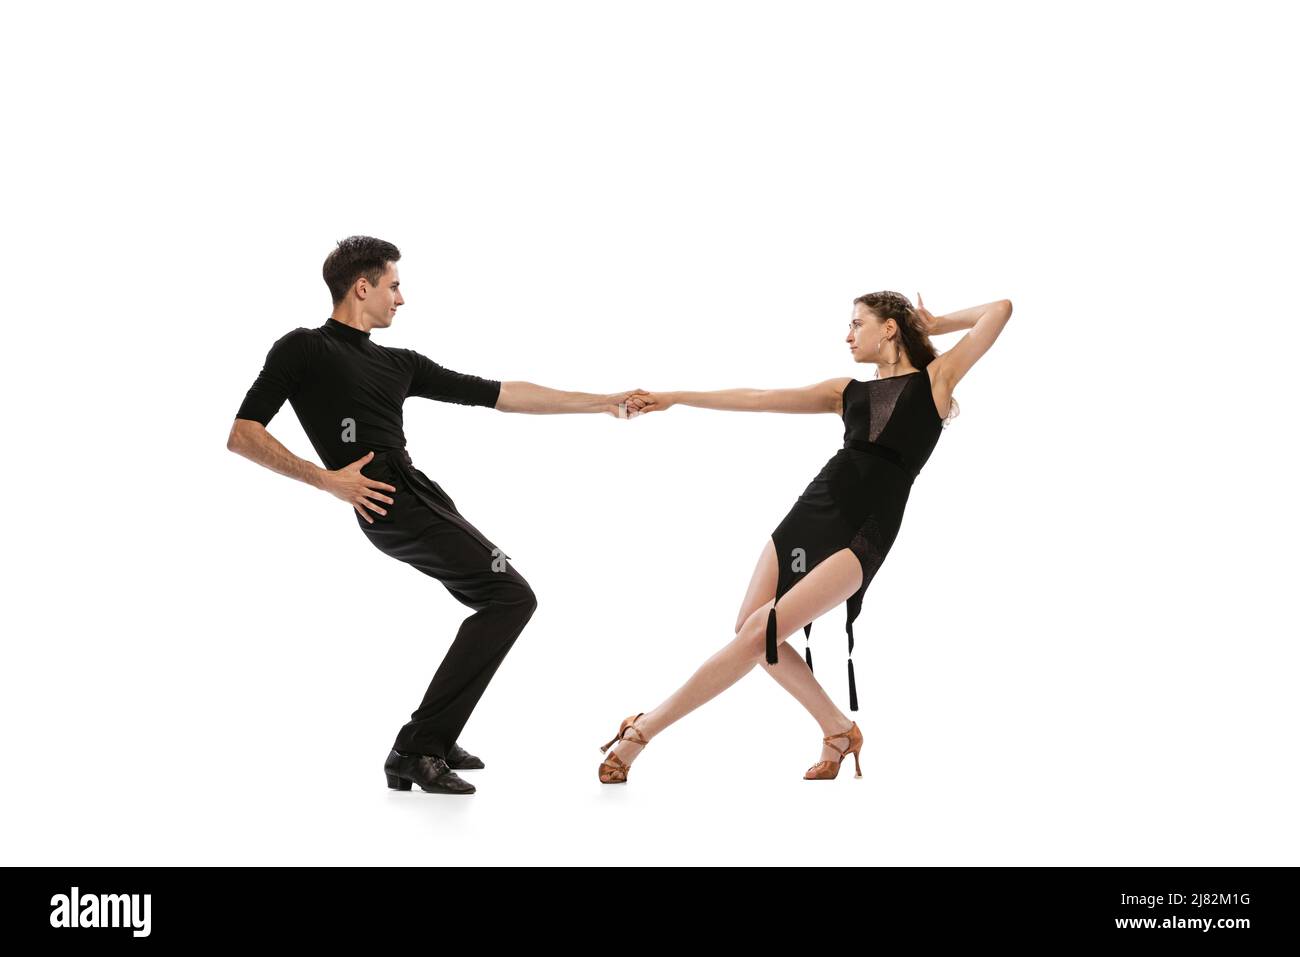 Dynamisches Porträt von jungen, gefühlvollen Tänzern in schwarzen Outfits, die auf weißem Hintergrund den Tanz im Ballsaal tanzen. Konzept von Kunst, Schönheit, Musik, Stil. Stockfoto